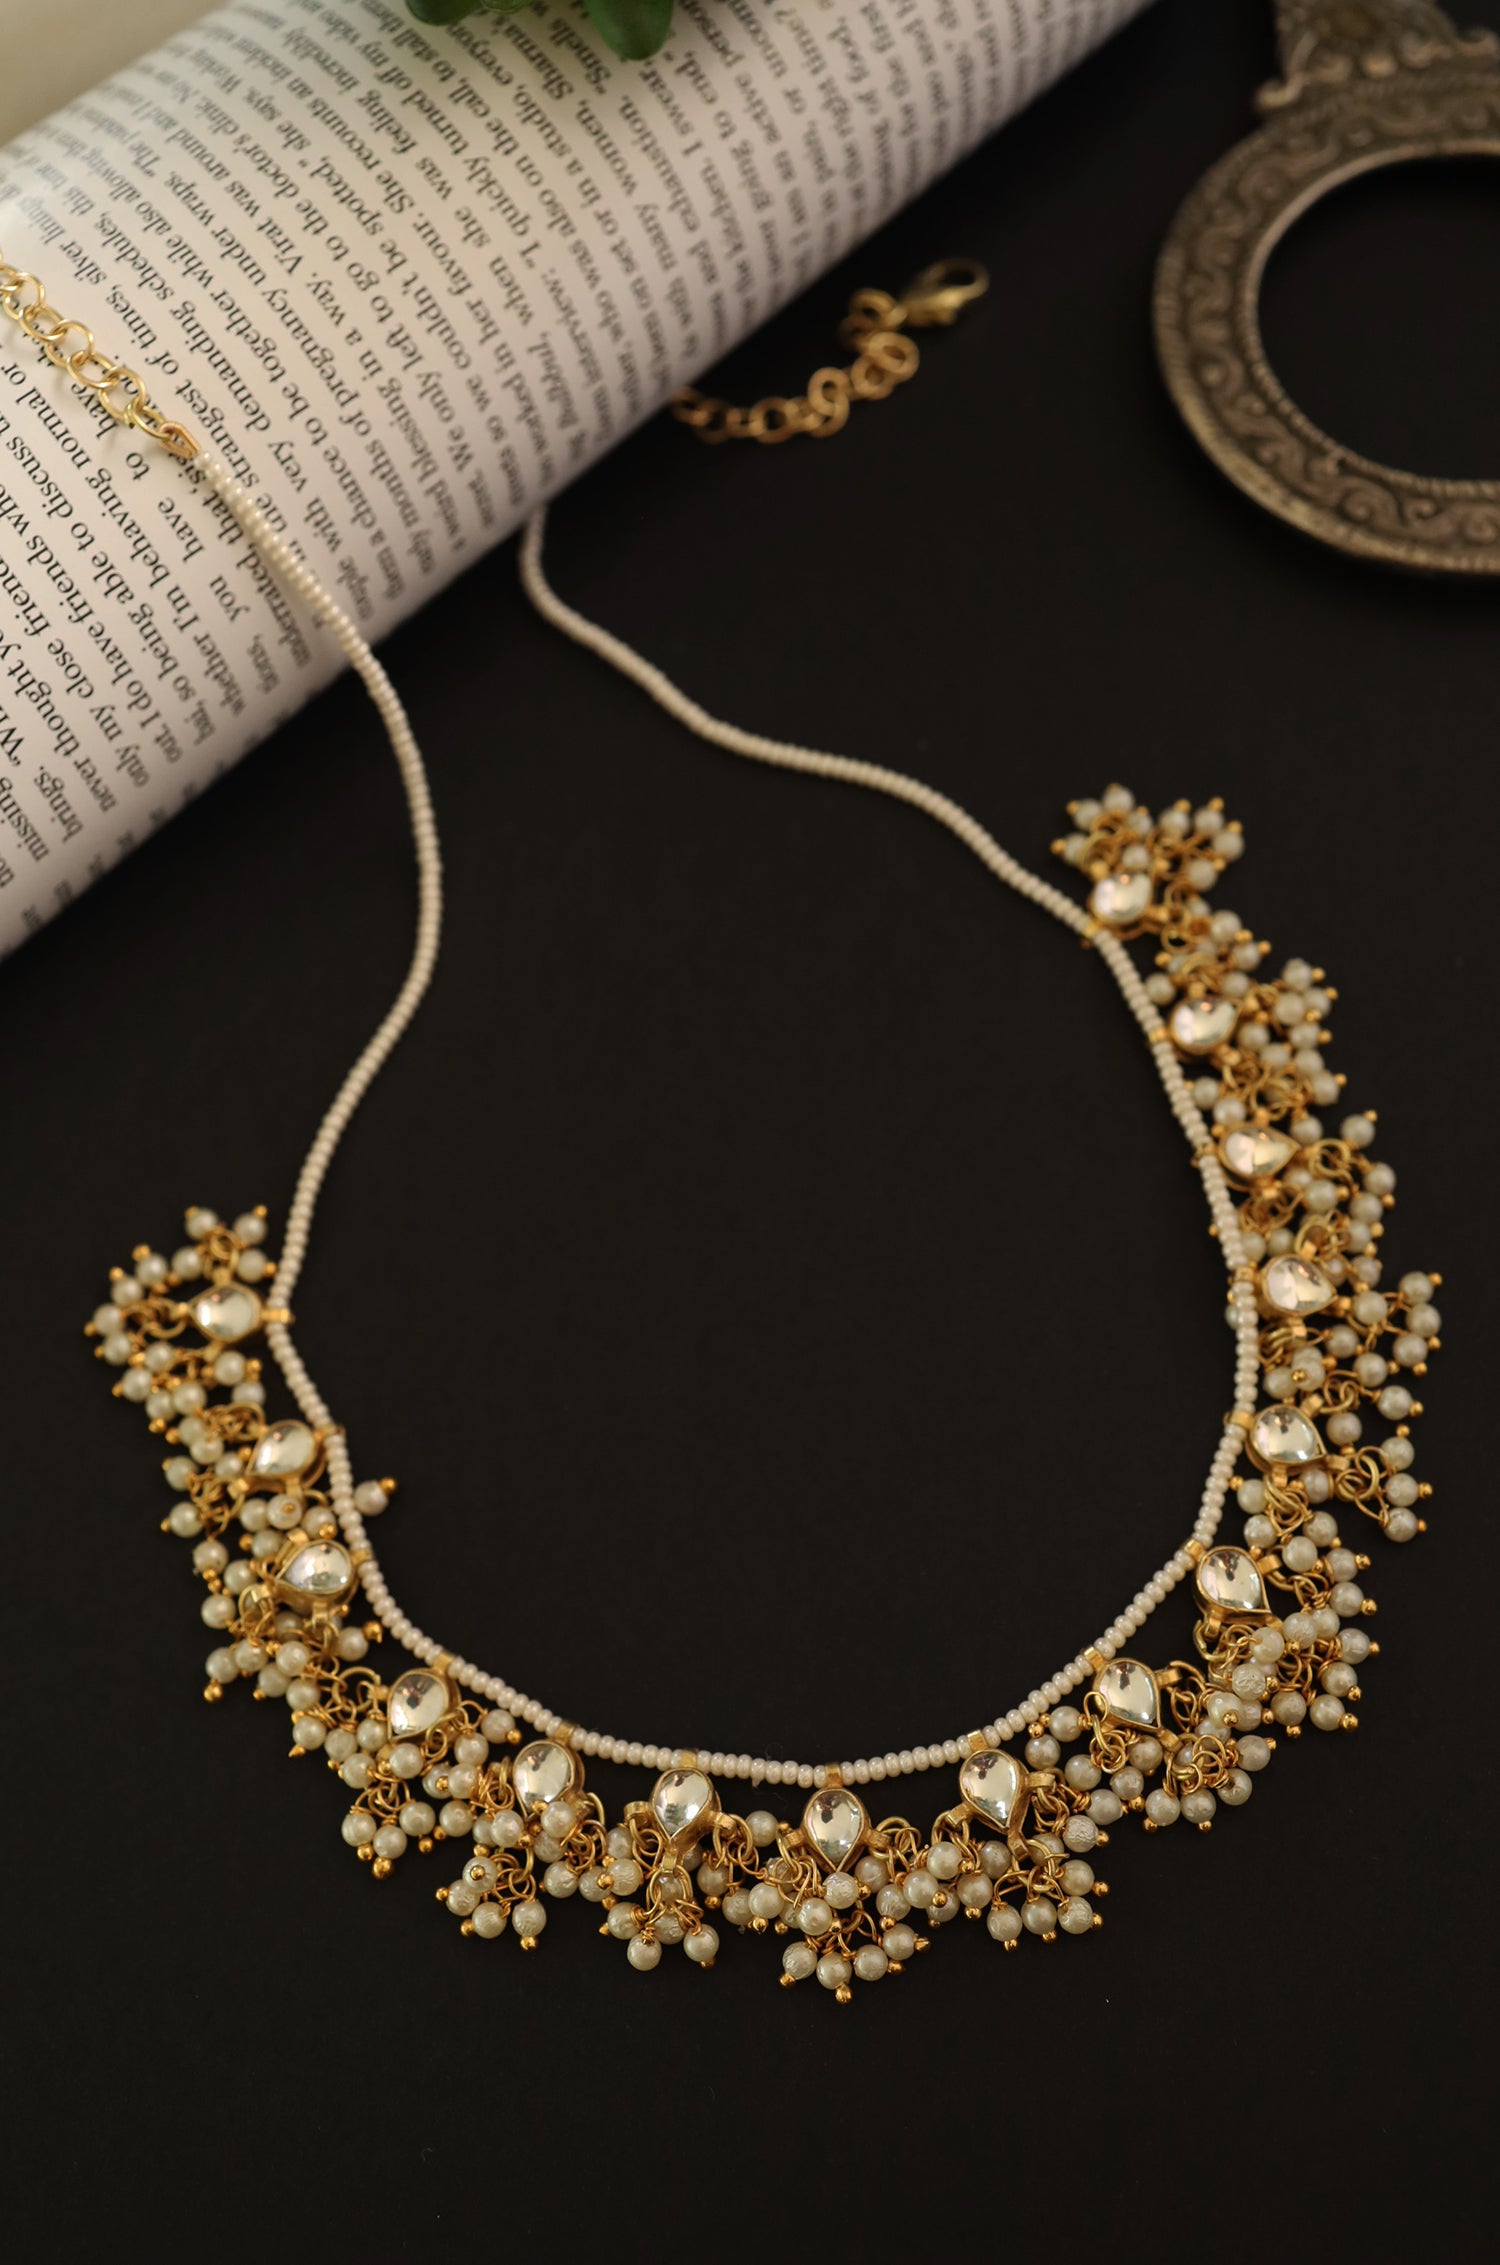 Kundan Pearl Necklace